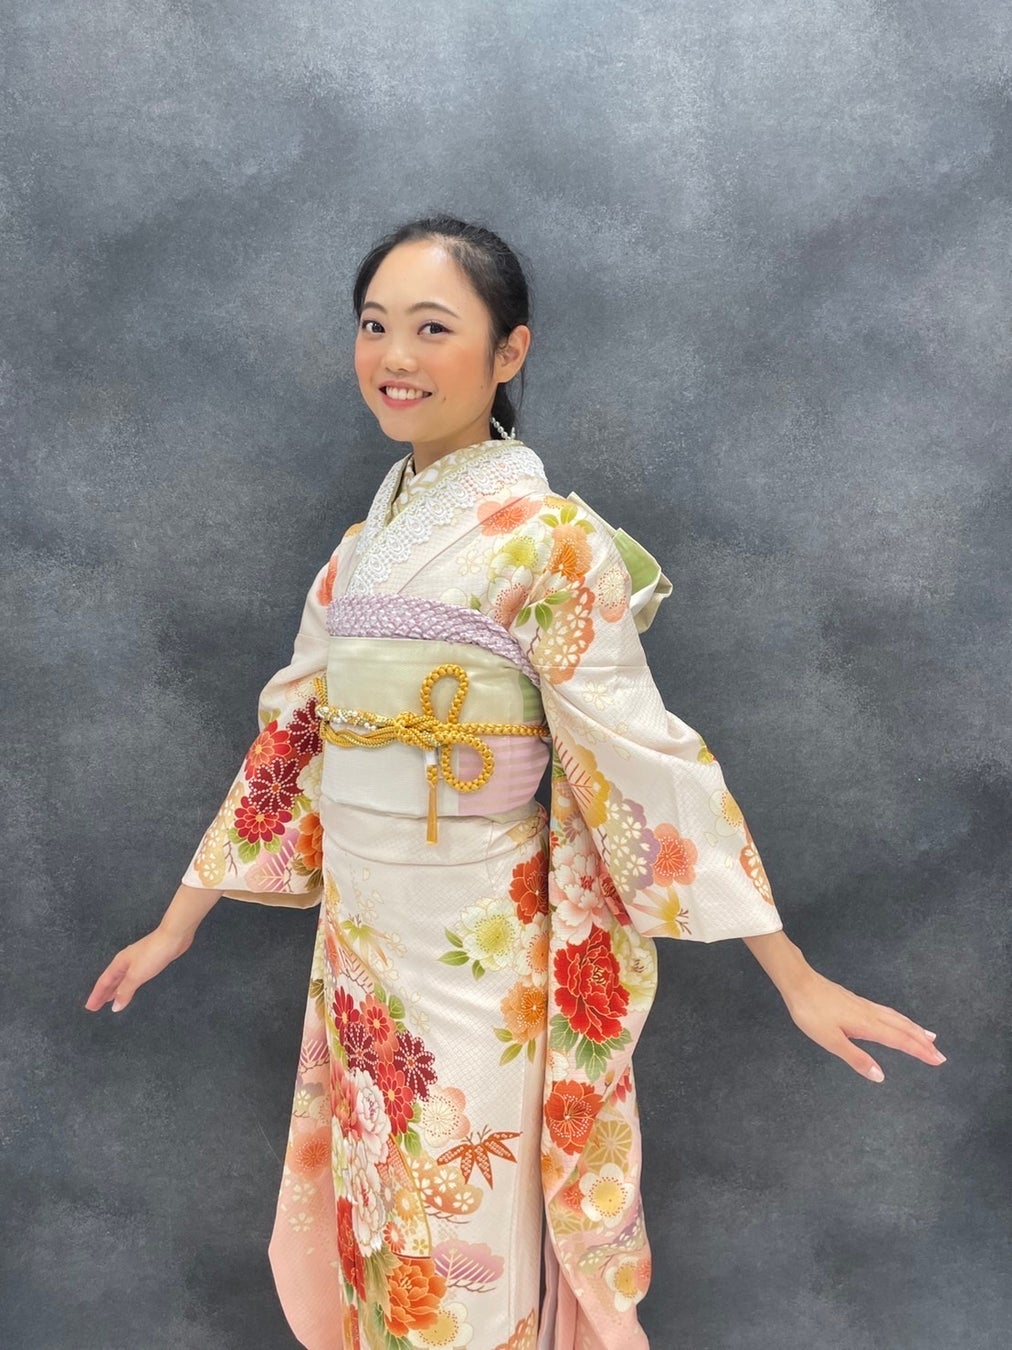 日本一可愛い女子大生を決めるミスコン『ミスユニバーシティ』第３位が振袖姿を披露